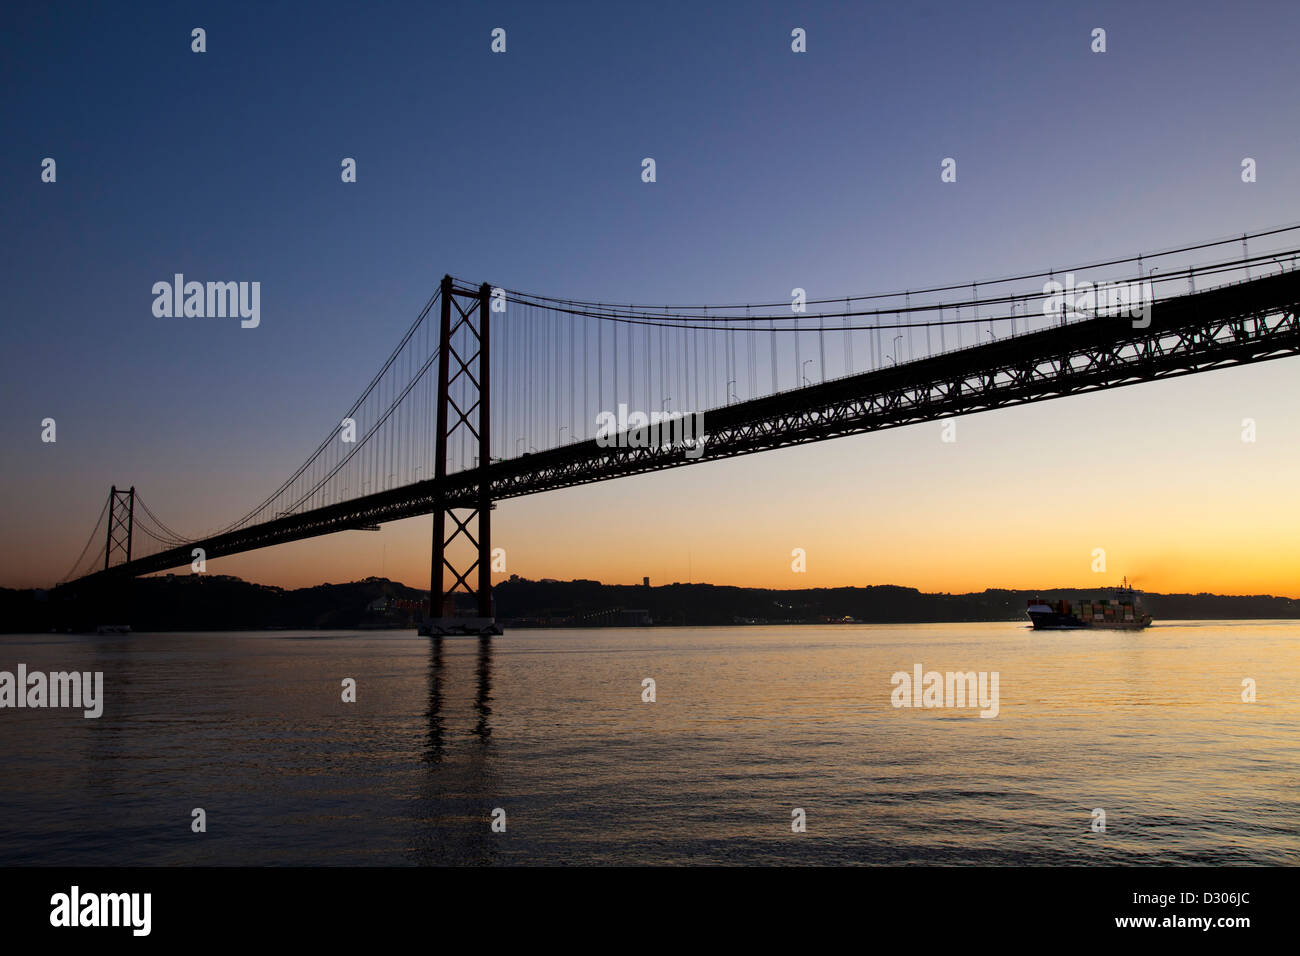 25 th April bridge on theTagus river, Lisbon, Portugal. Stock Photo